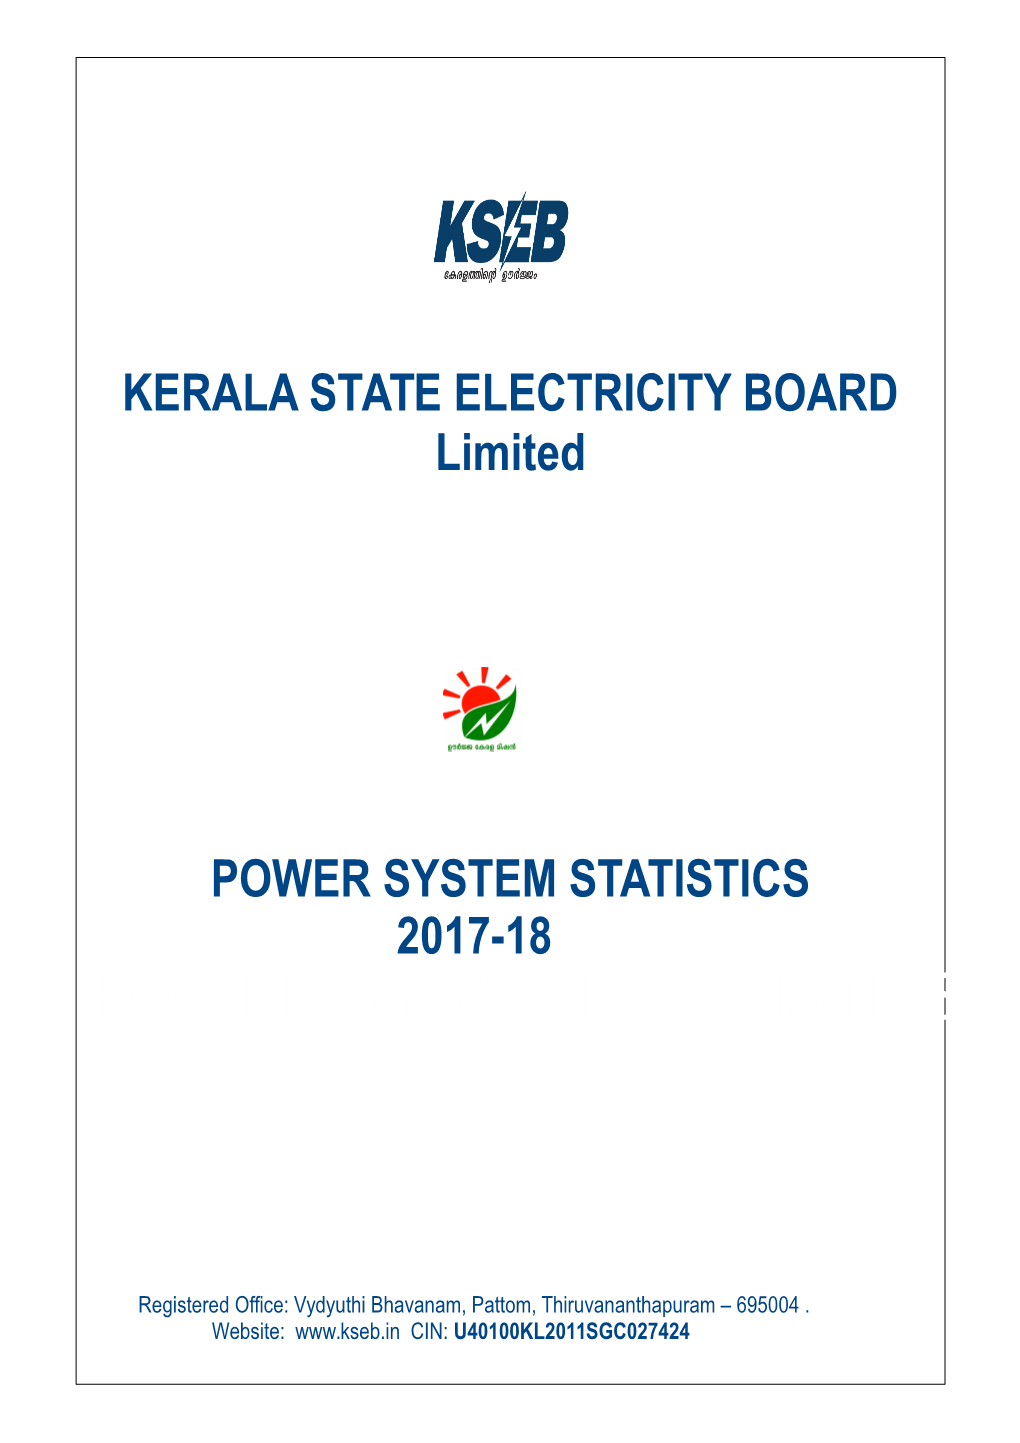 Power System Statistics 2017-18 Power System Statistics